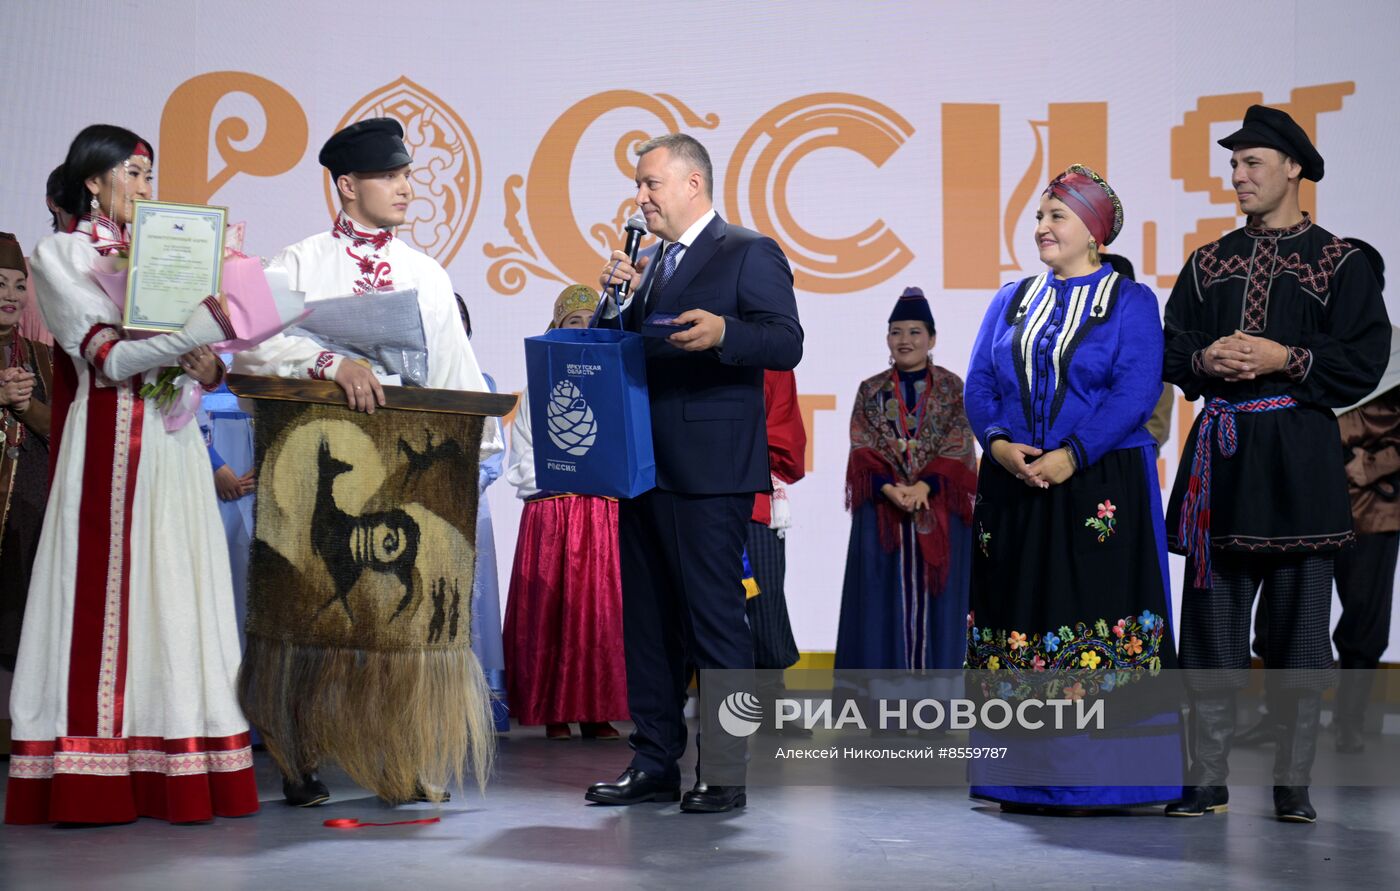 Выставка "Россия". Свадебная церемония в традициях Иркутской области